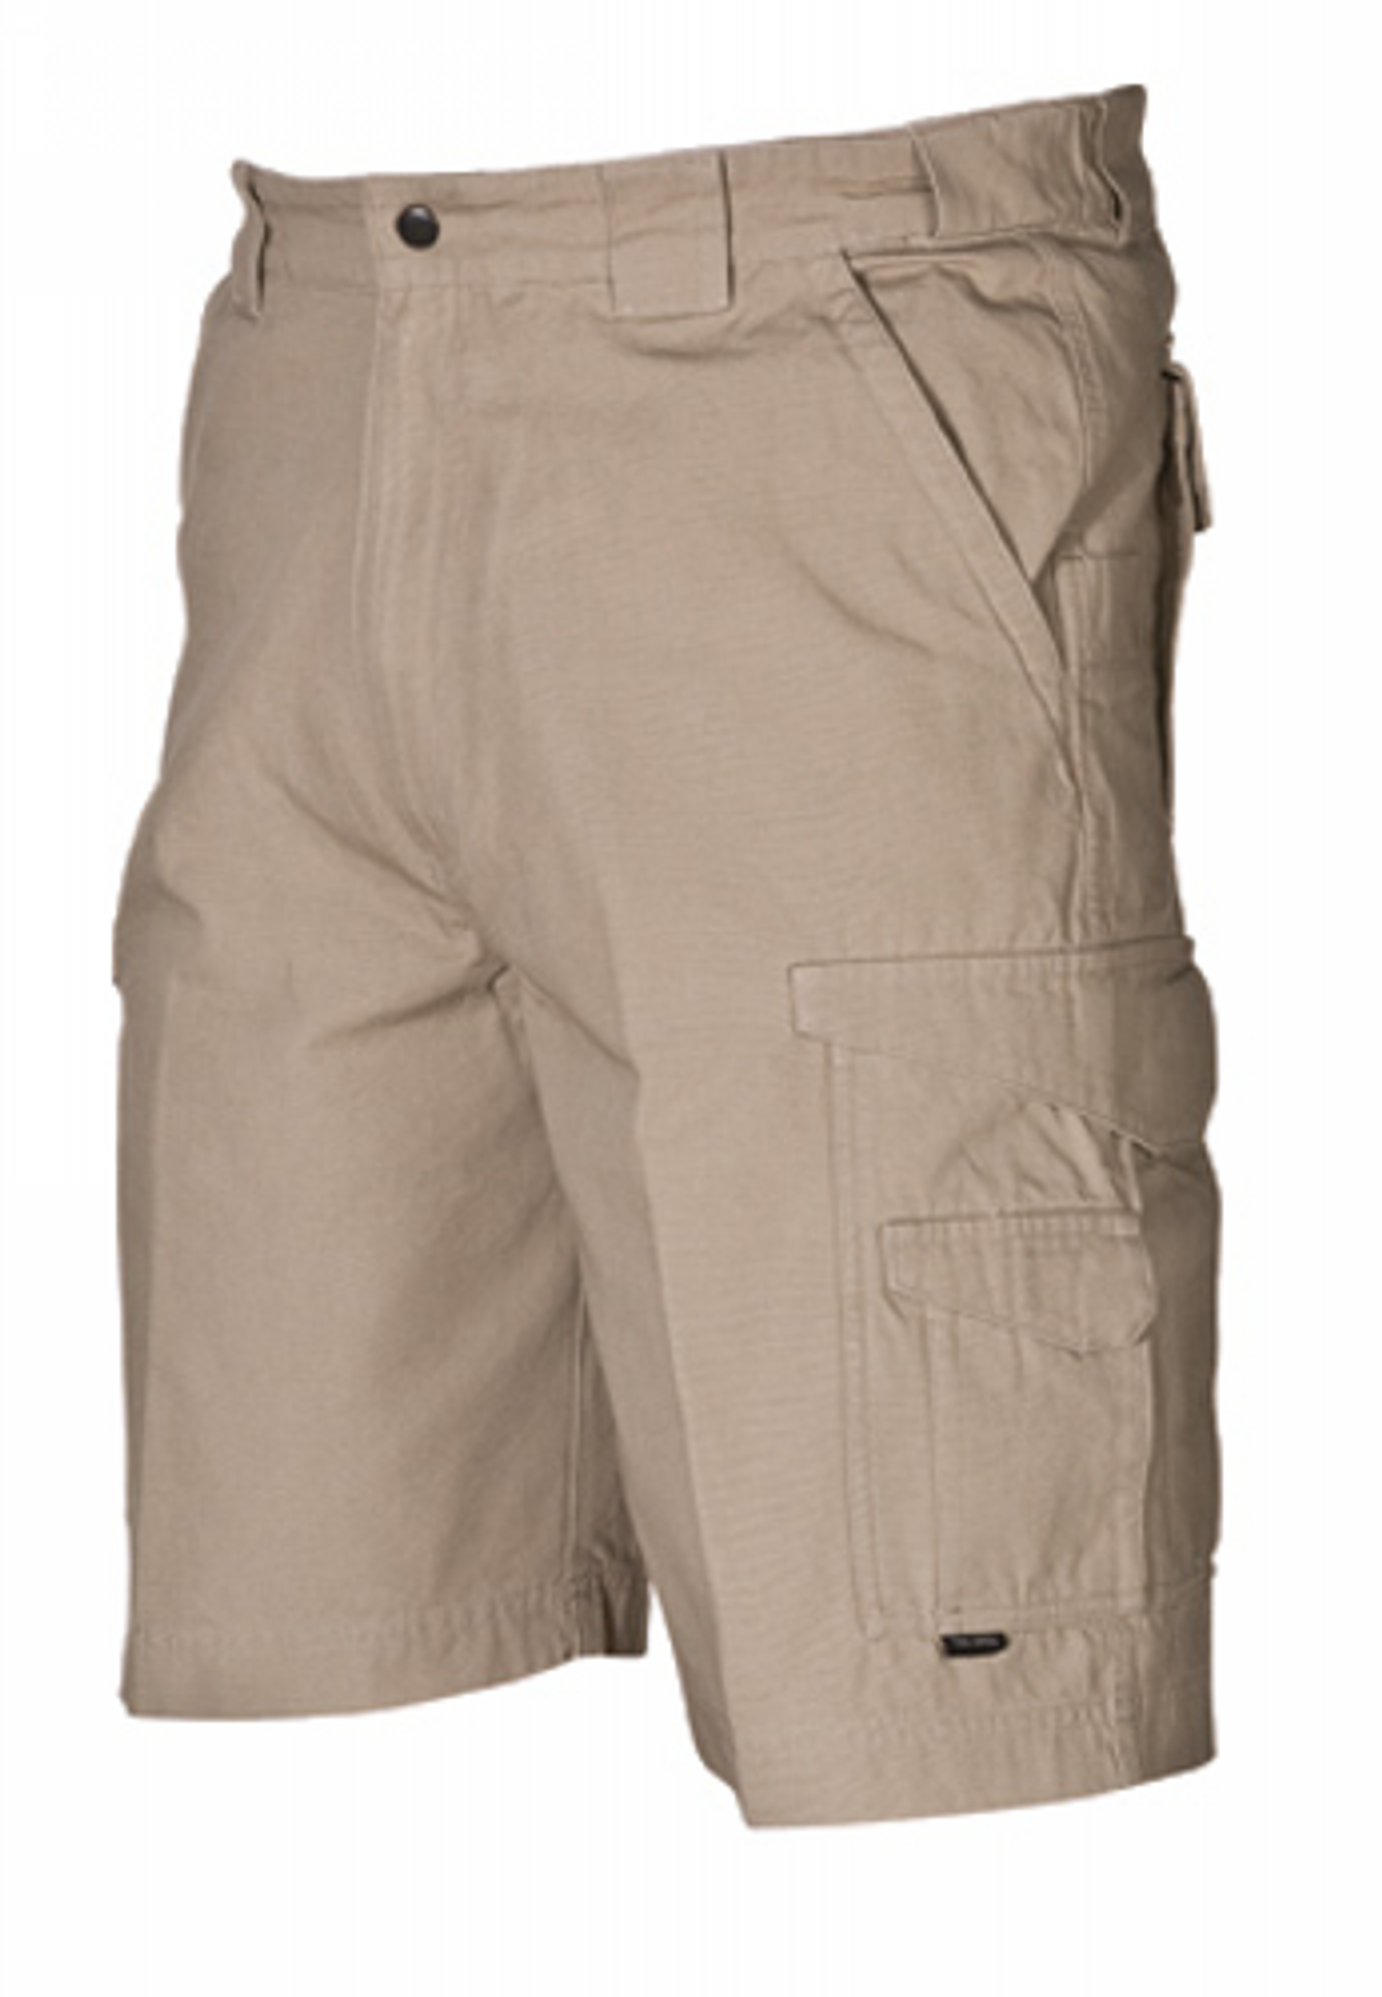 Original Tactical Shorts - KRTSP-4268002